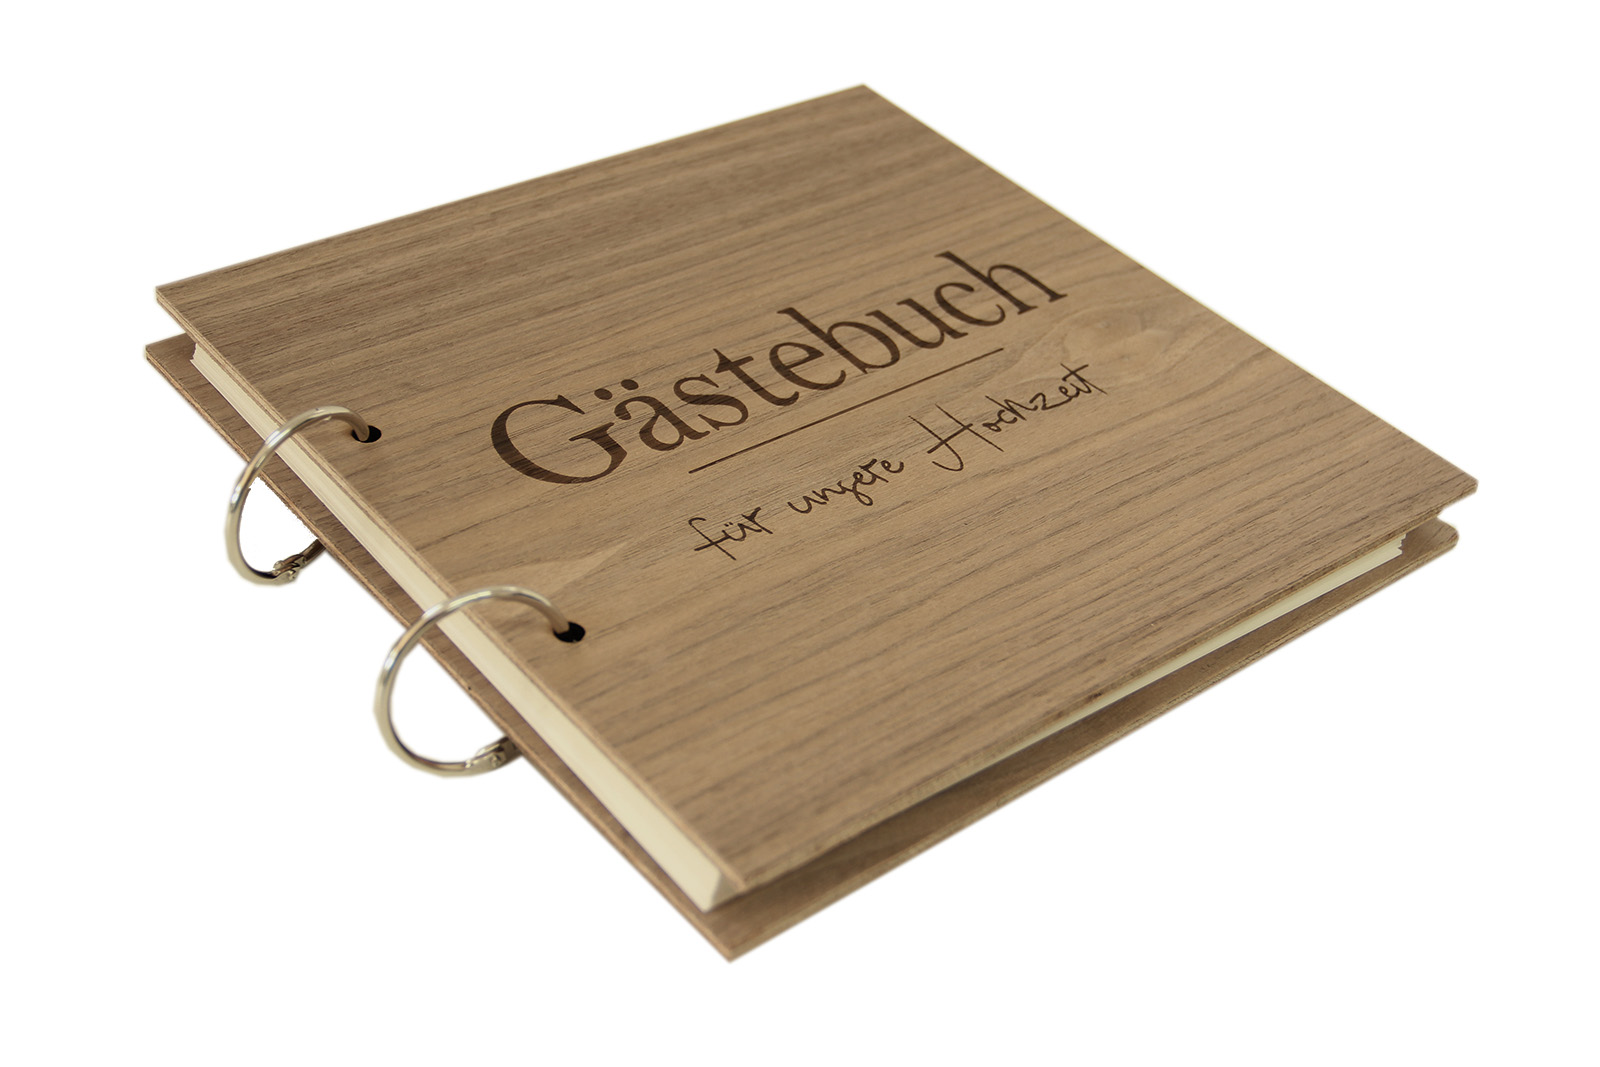 Holzgrusskarten - Gästebuch Ringbuch quadratisch - Gästebuch für unsere Hochzeit